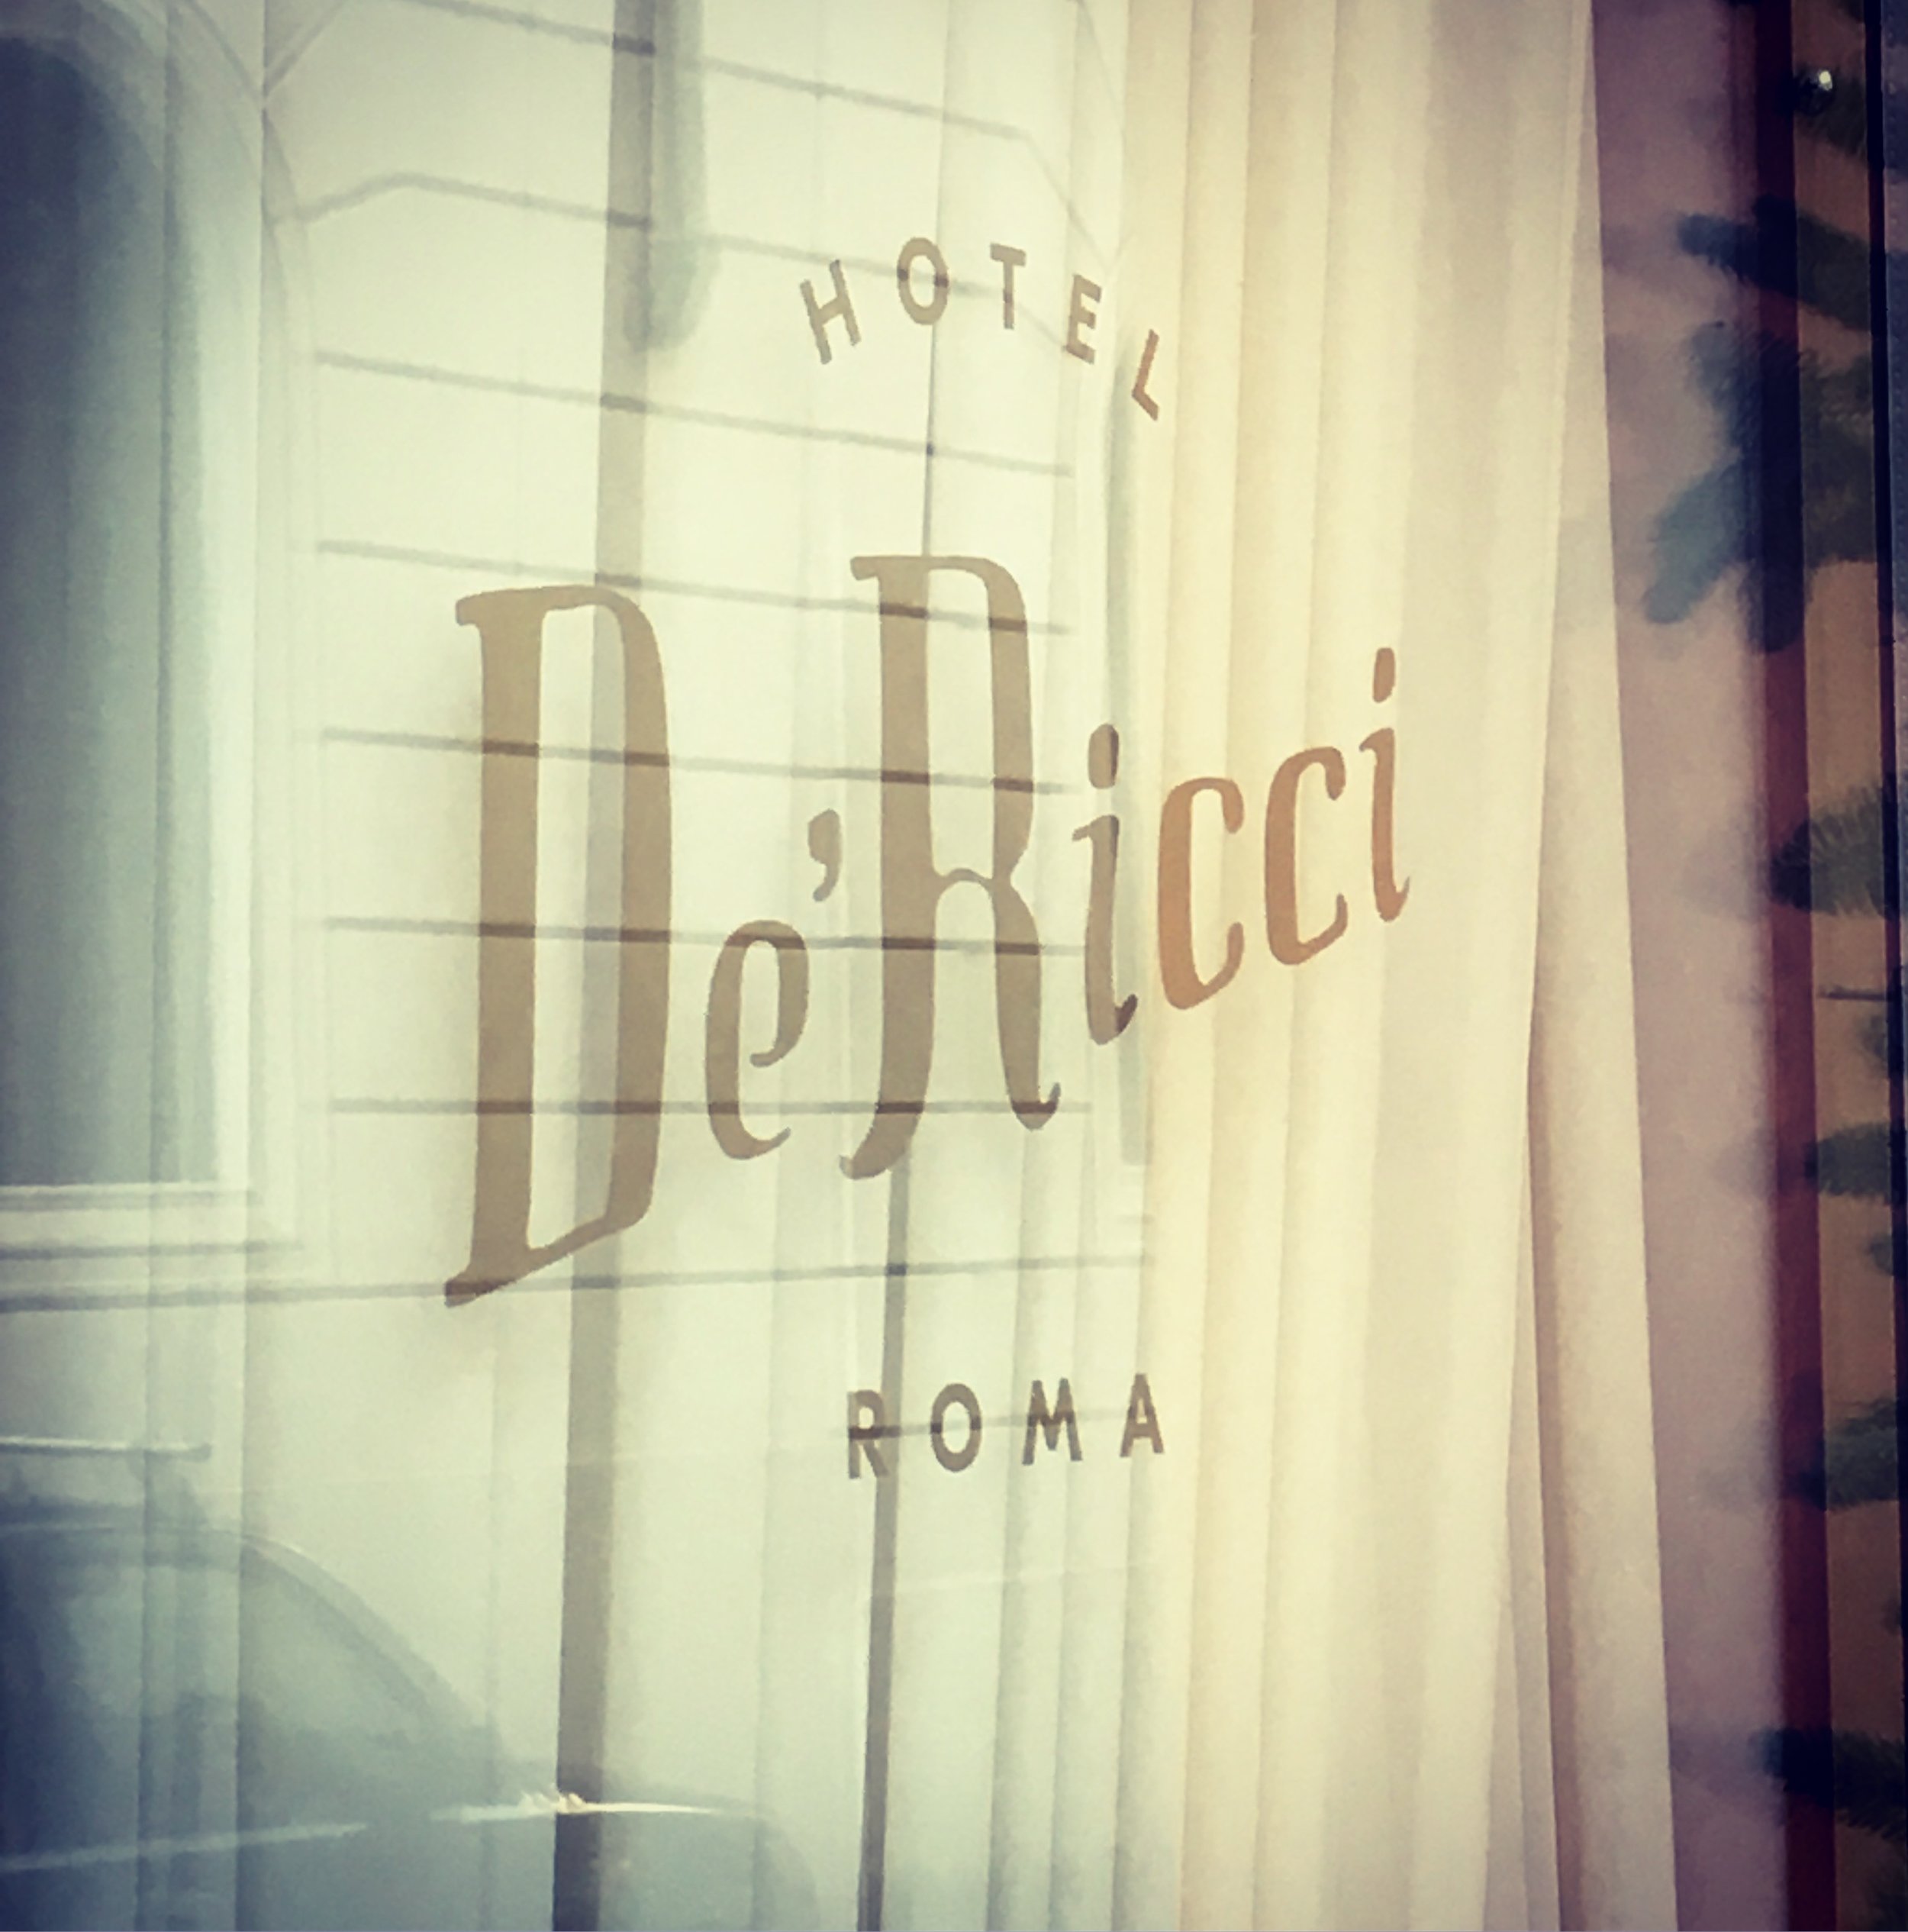   Decor and branding for Hotel De’Ricci, Rome  